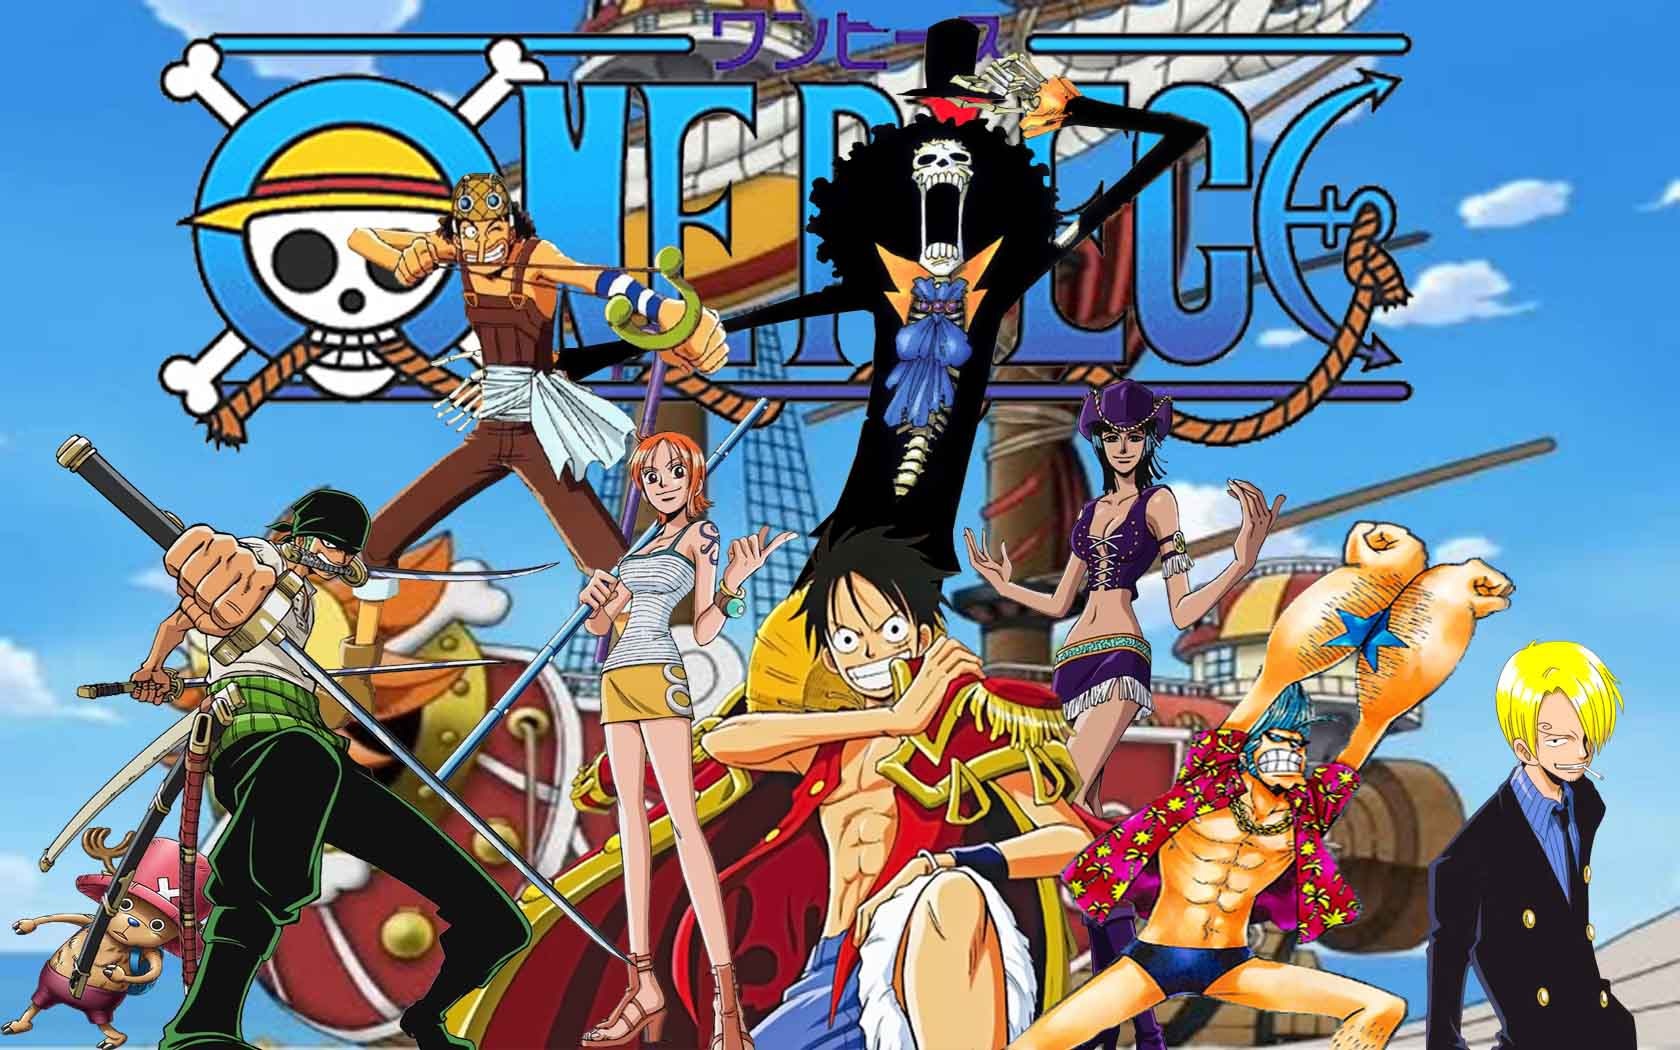 Với những ai yêu thích thể loại Anime, bộ truyện One Piece chắc chắn là bộ truyện thú vị và hấp dẫn nhất. Ảnh Anime One Piece đẹp với những màu sắc ngọt ngào, tươi sáng sẽ khiến bạn thích thú và muốn tìm hiểu thêm về bộ truyện này.